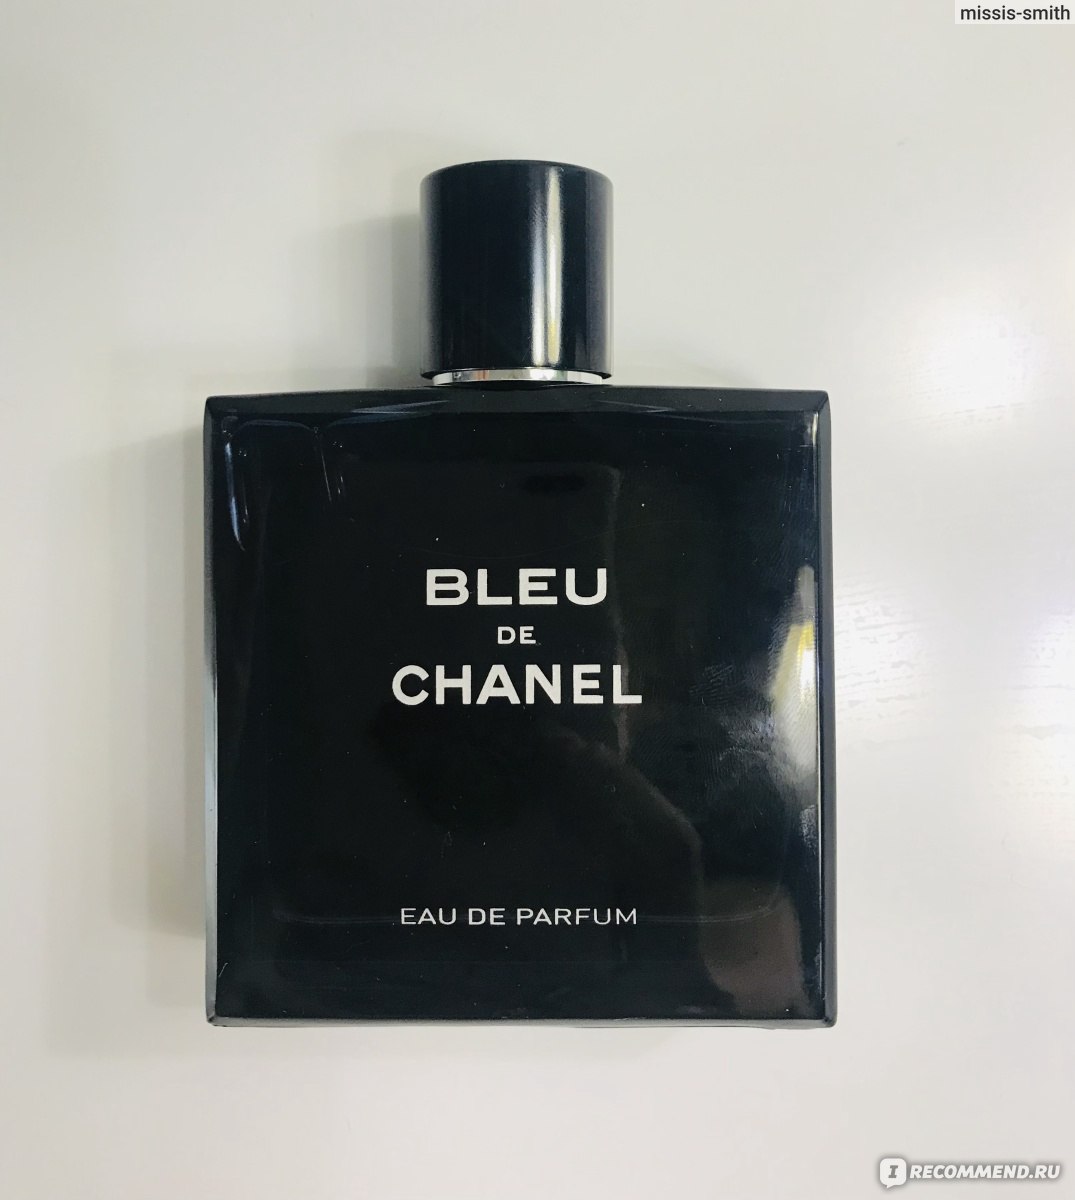 Мужской Парфюм мой любимый муж. Chanel ch51 отзывы. Chanel bleu de chanel отзывы